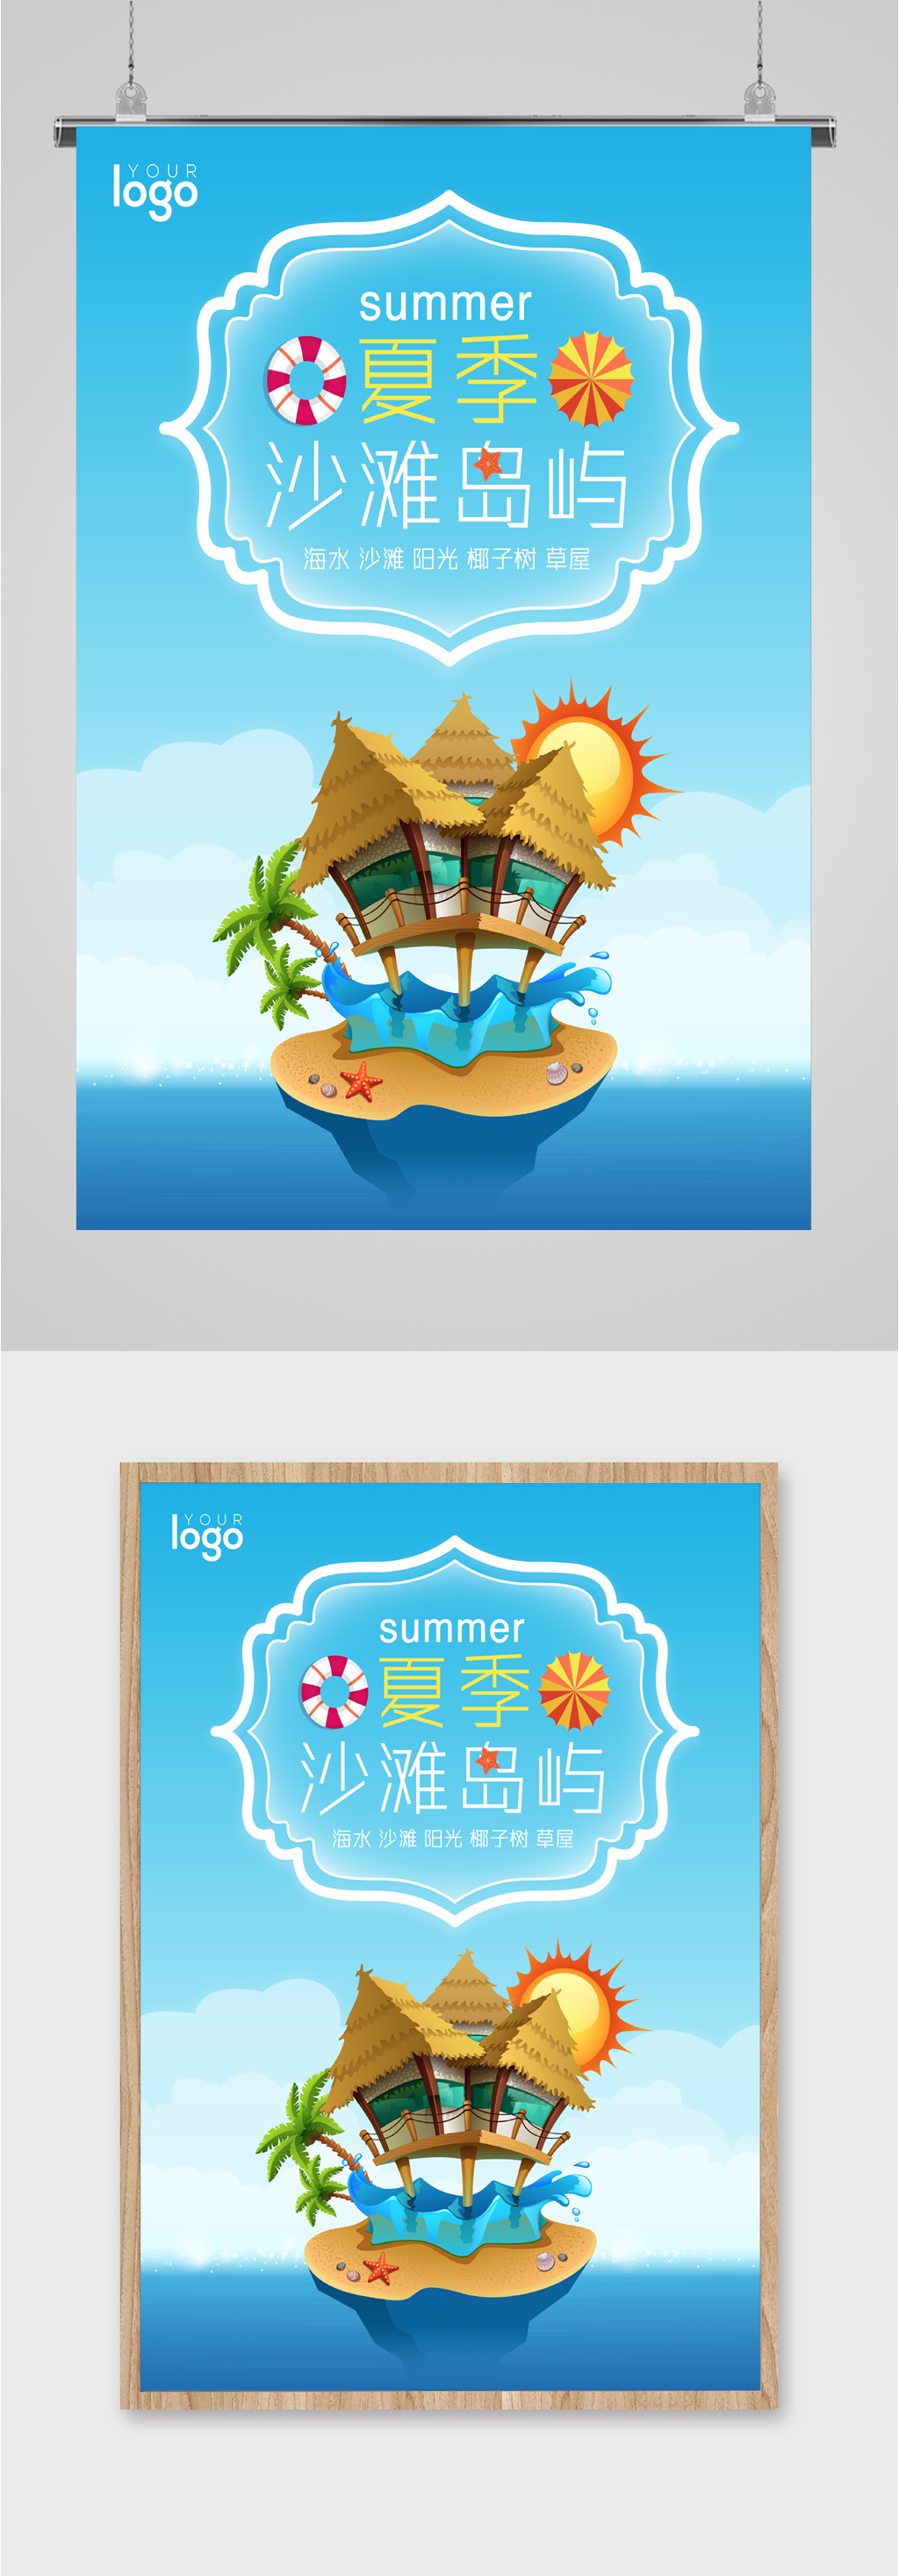 沙滩岛屿旅游海报